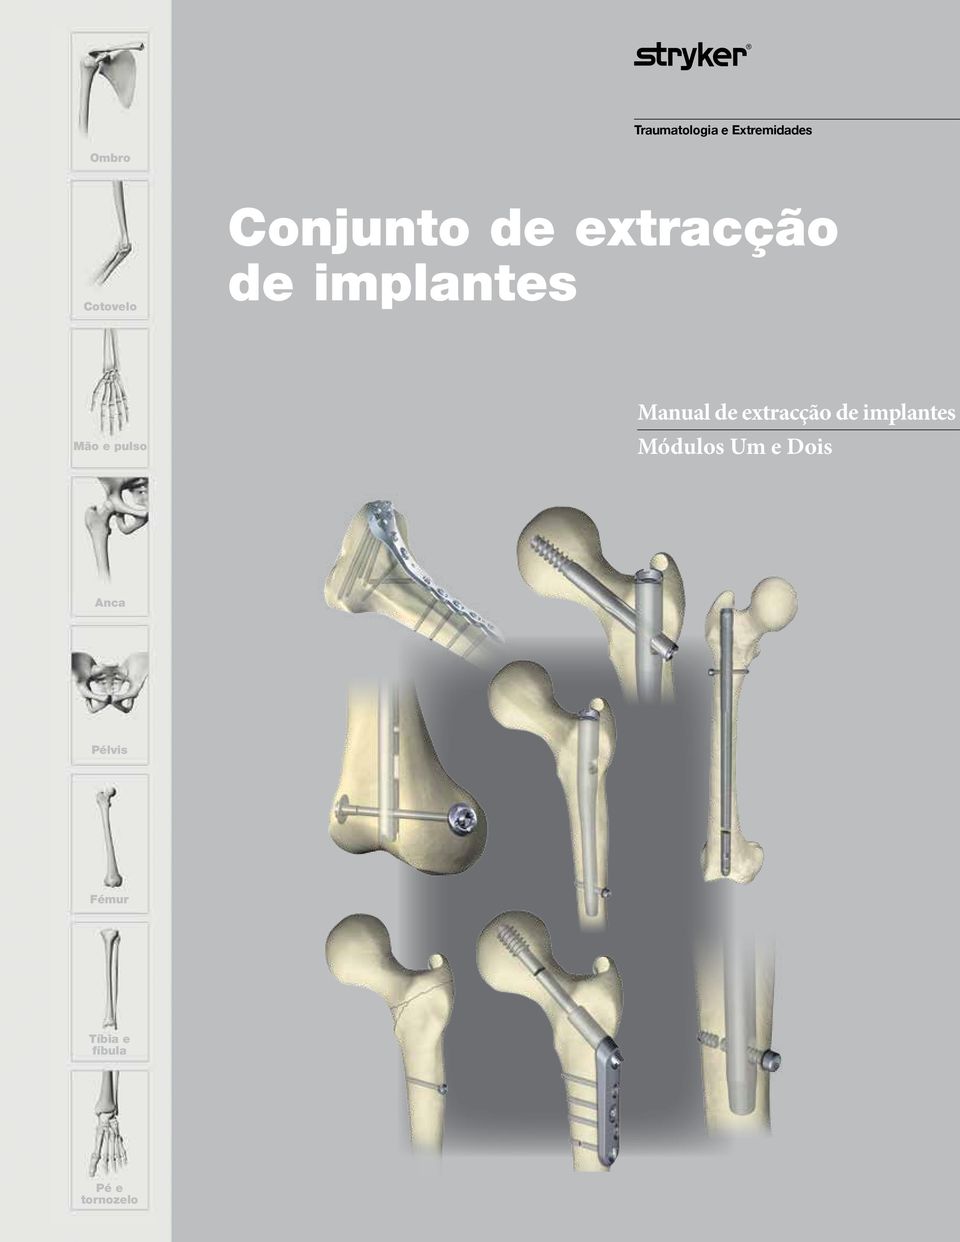 Manual de extracção de implantes Módulos Um e